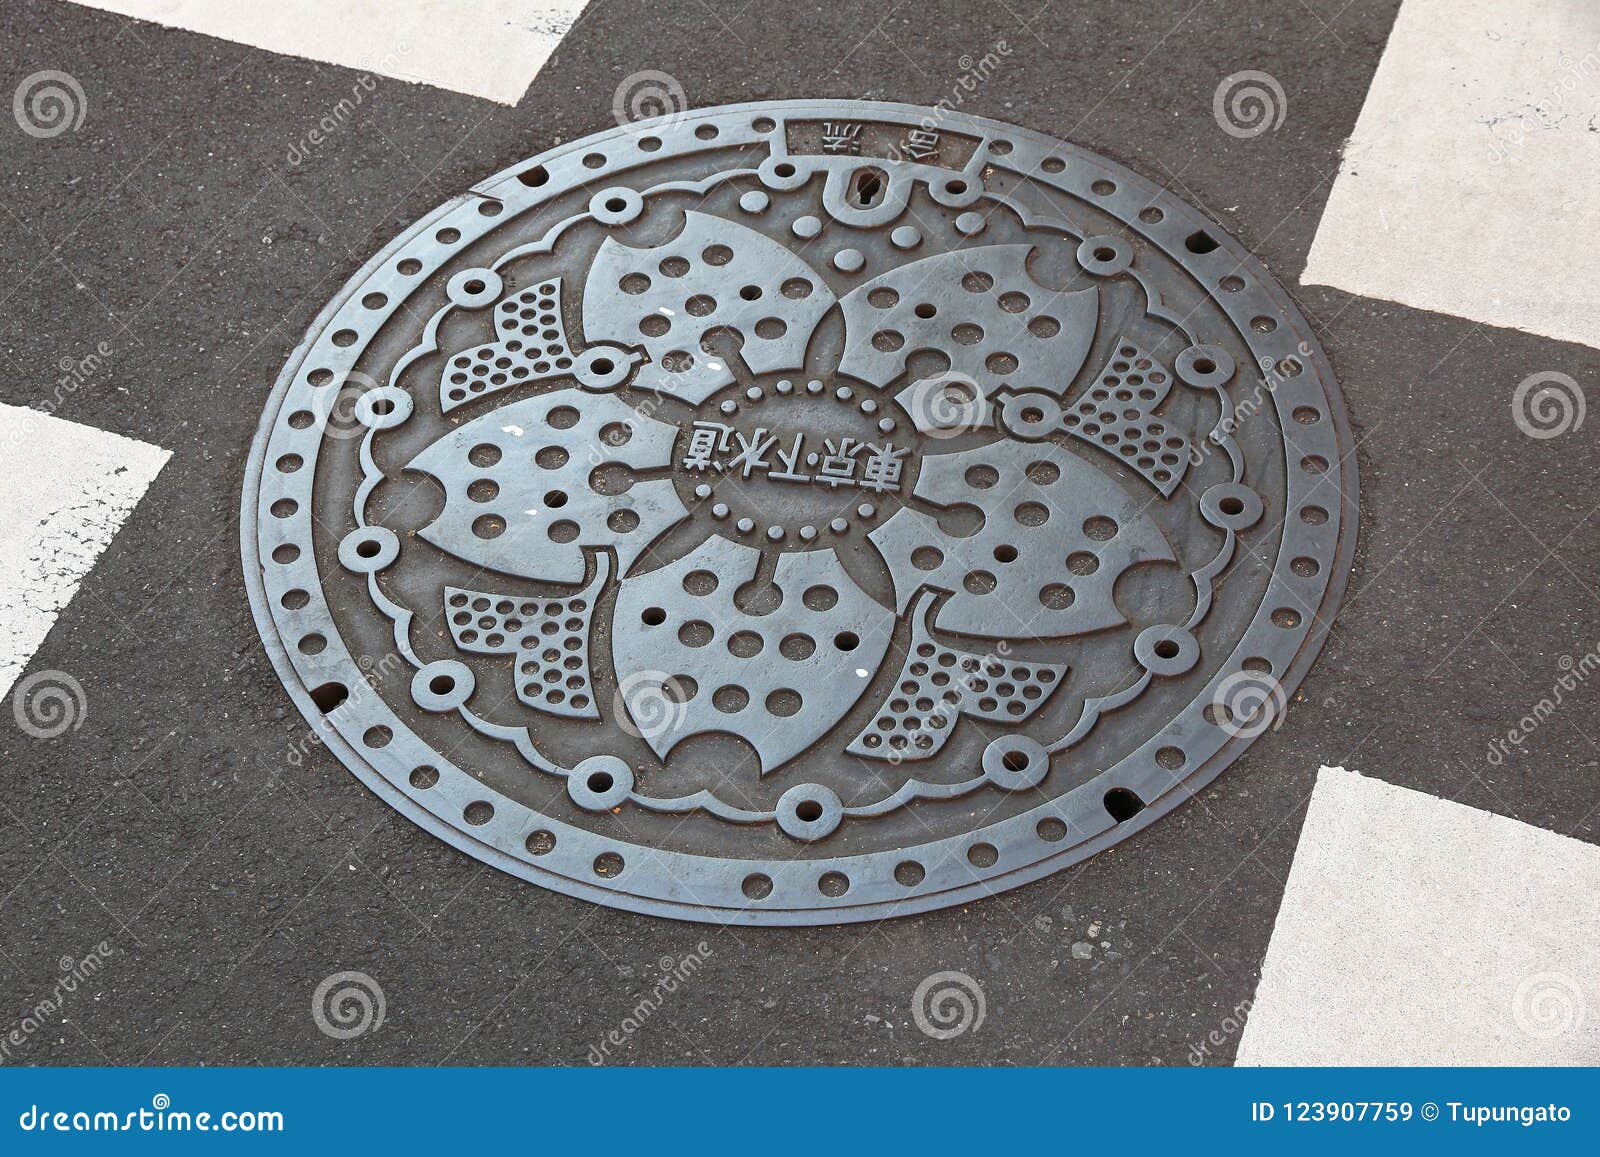 Japan Manhole Cover Stock Image Image Of Japanese Asakusa